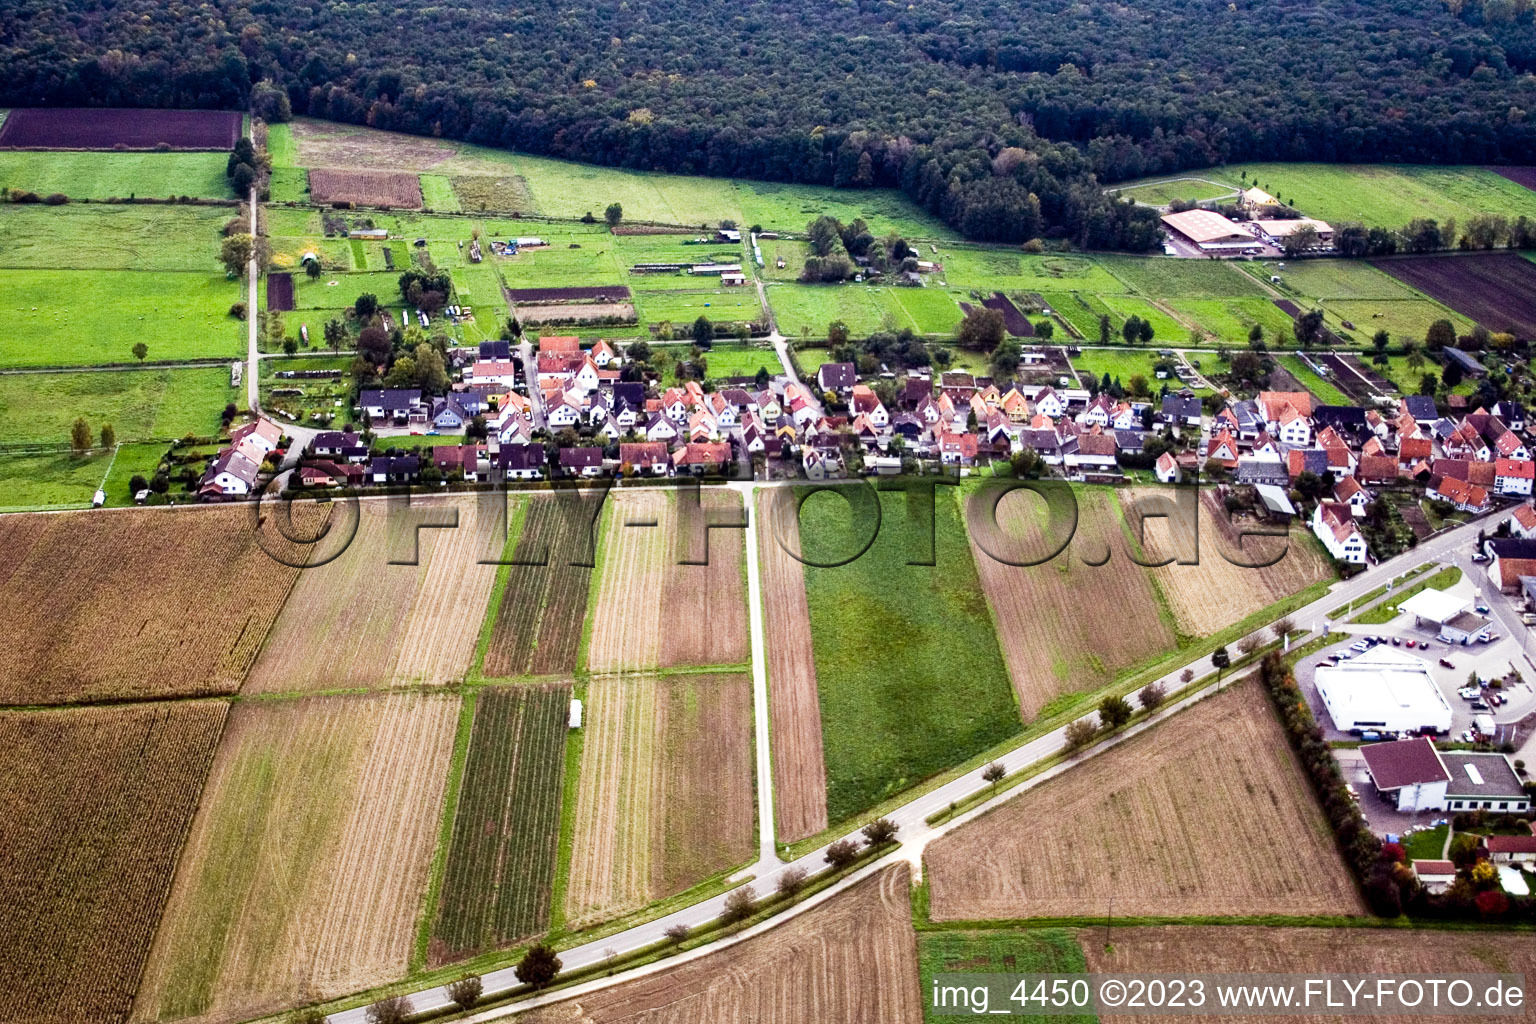 Gänsried à Freckenfeld dans le département Rhénanie-Palatinat, Allemagne hors des airs